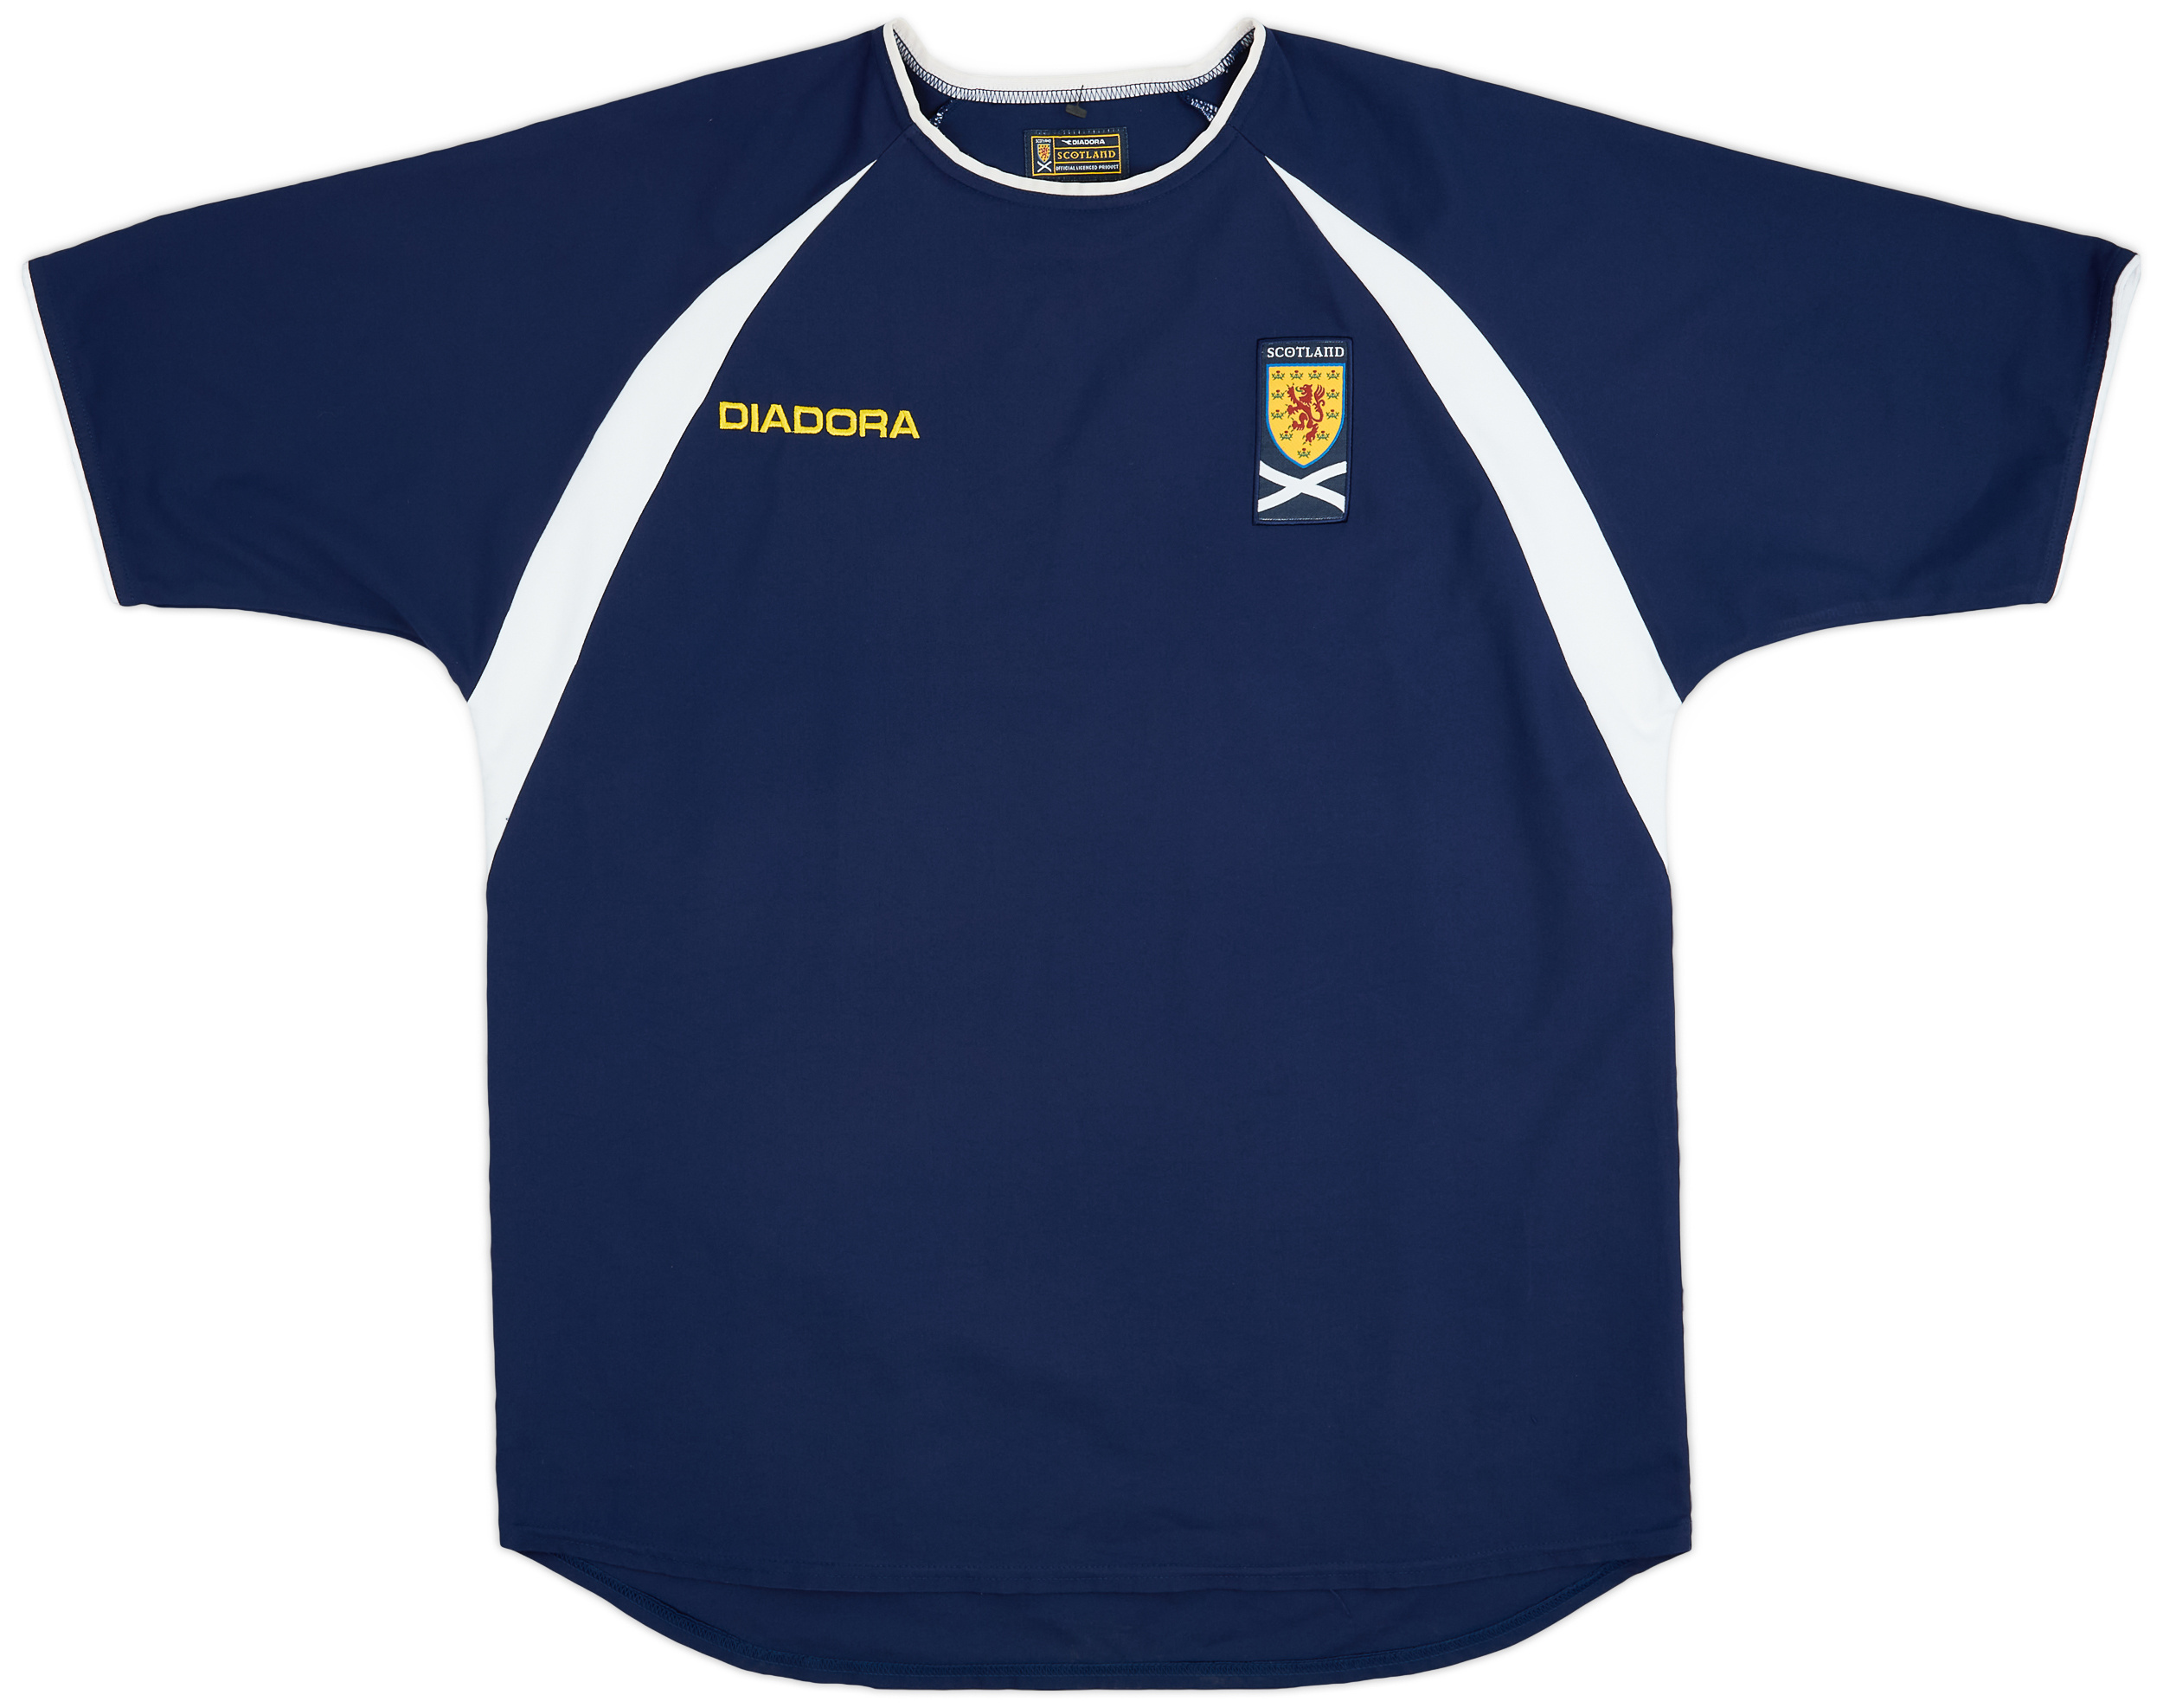 2003-05 Scotland Home Shirt - 10/10 - ()